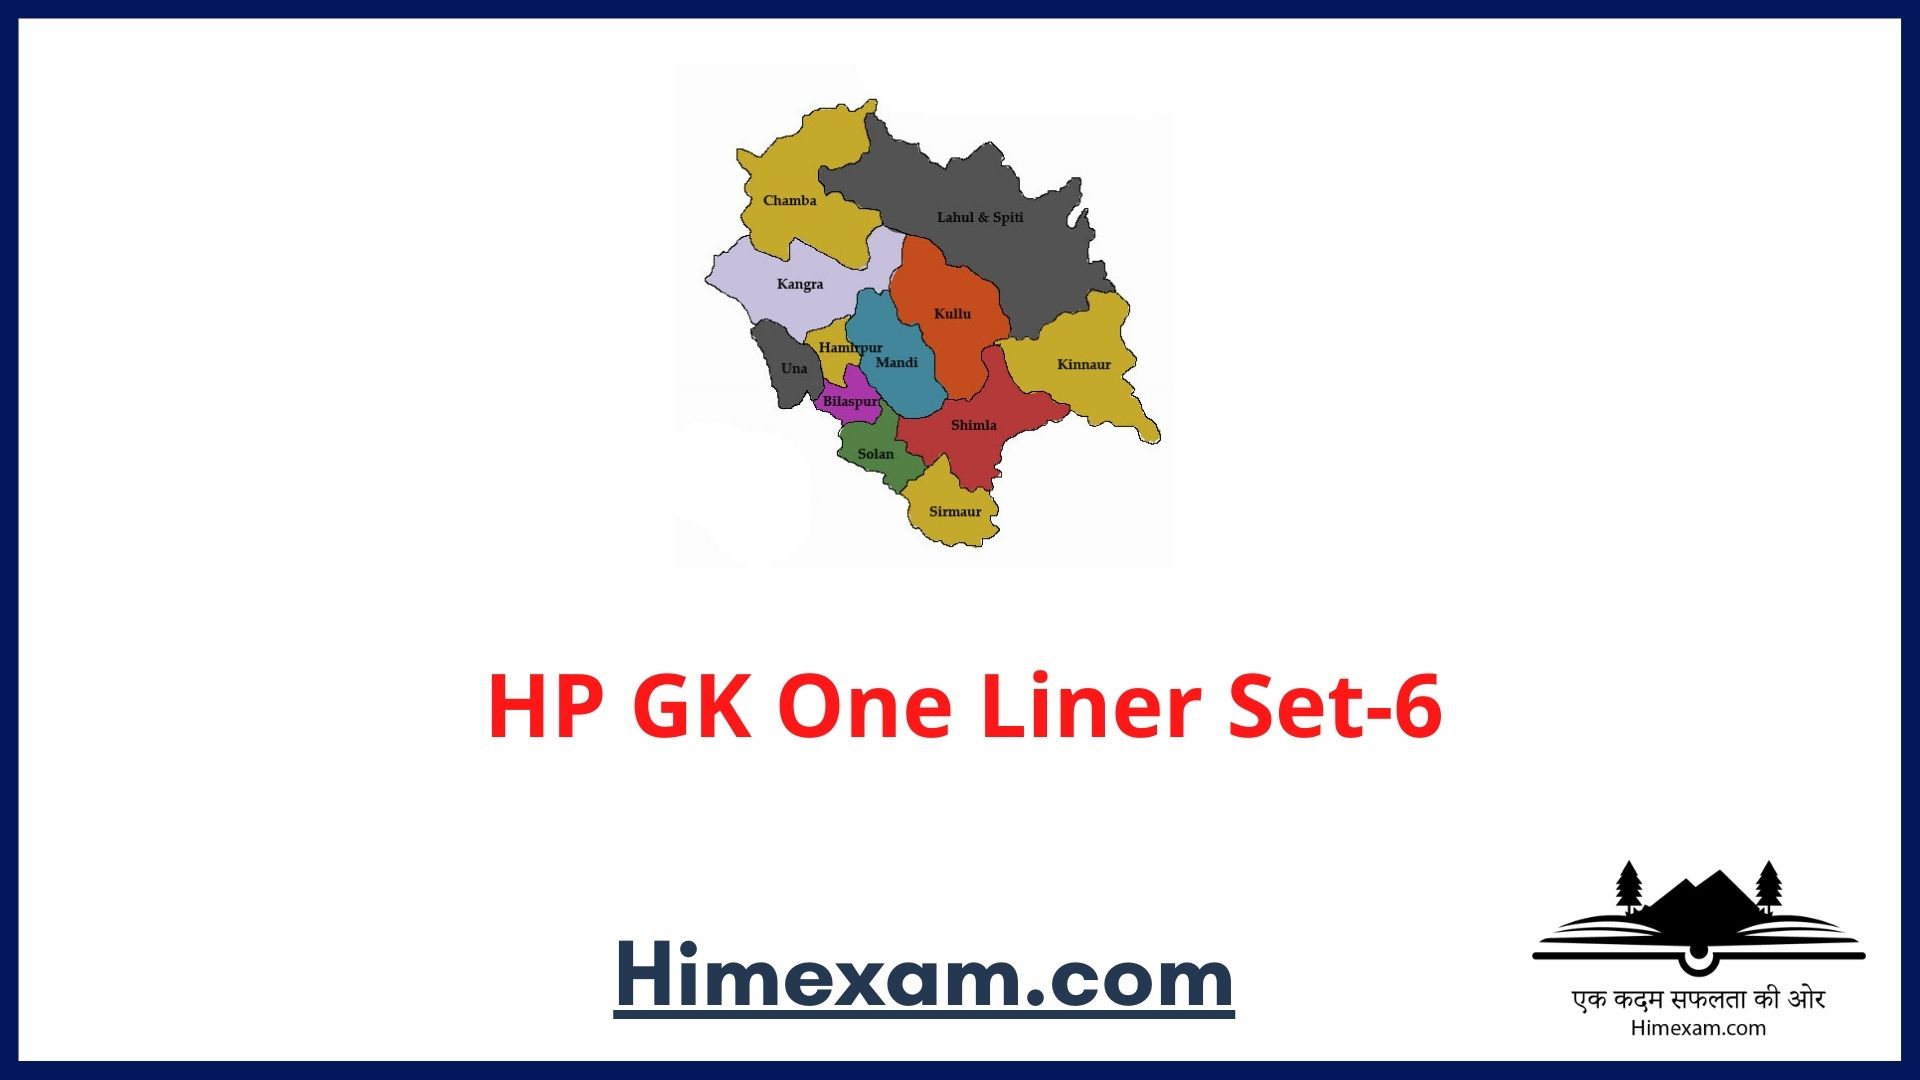 HP GK One Liner Set-6